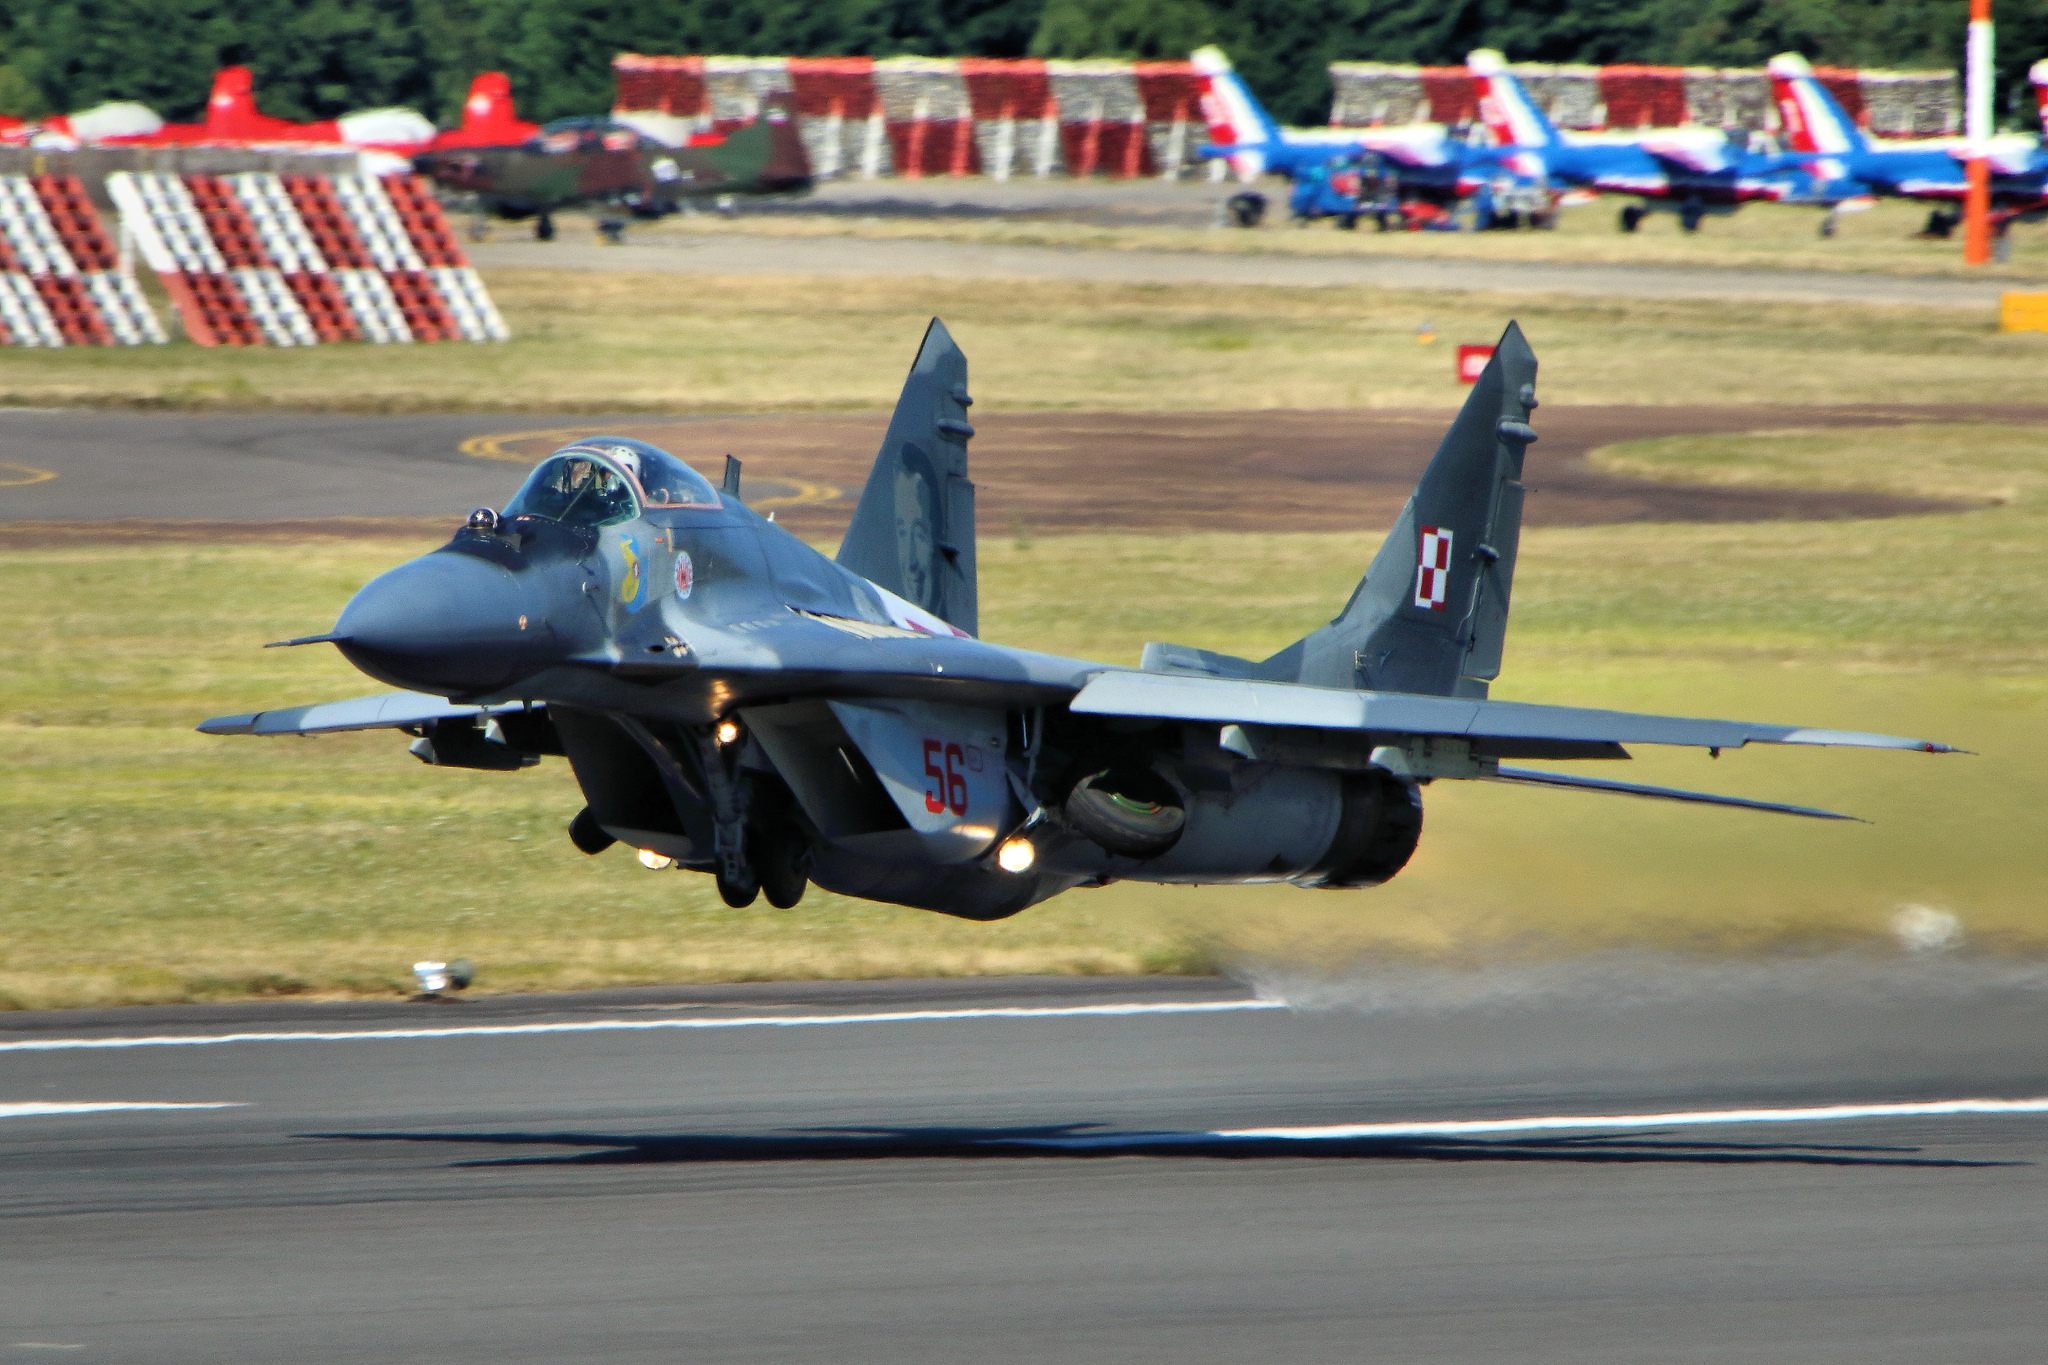 MiG - 29